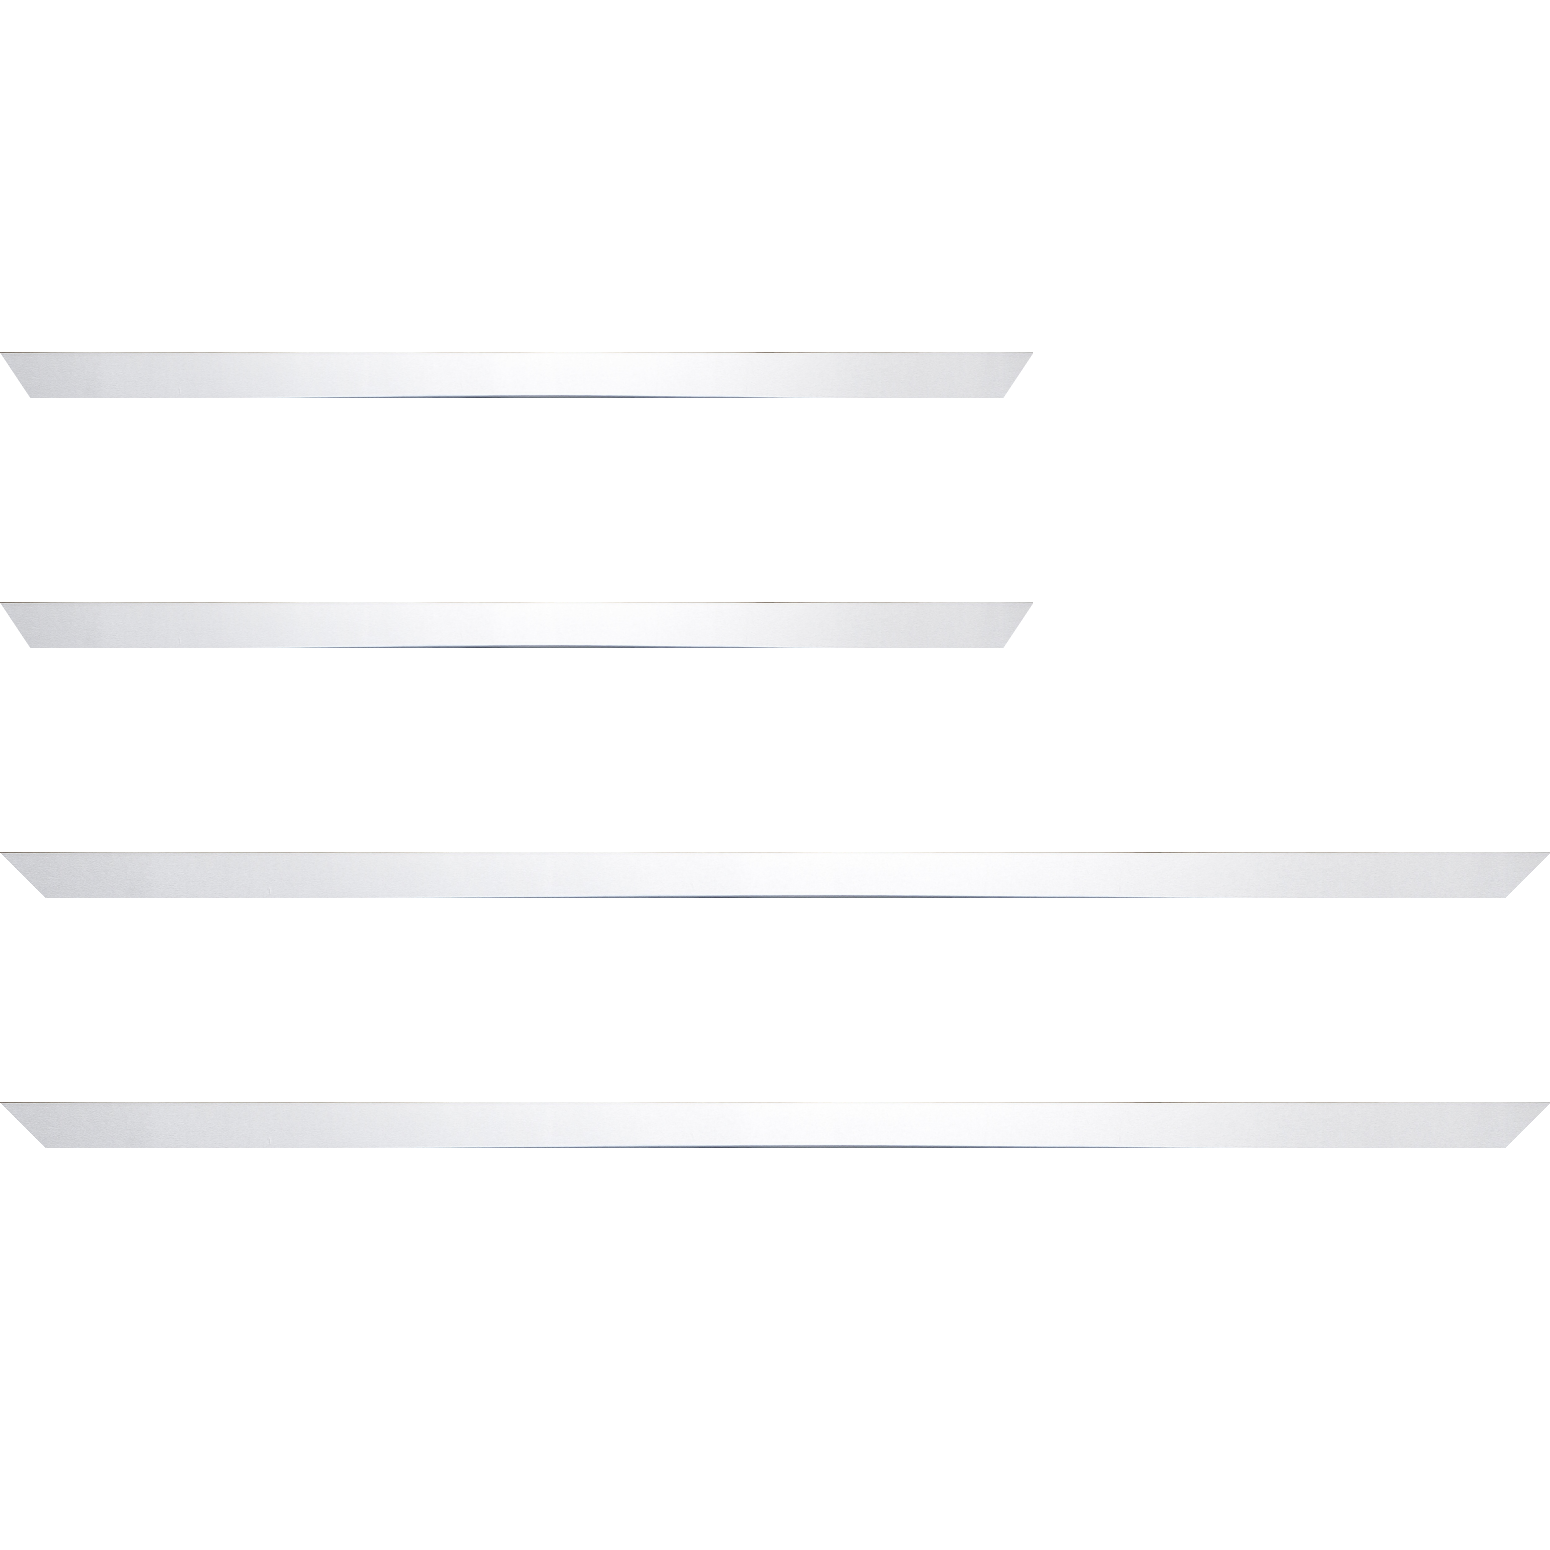 Baguette bois recouvert aluminium profil plat largeur 1.6cm argent poli  bord droit